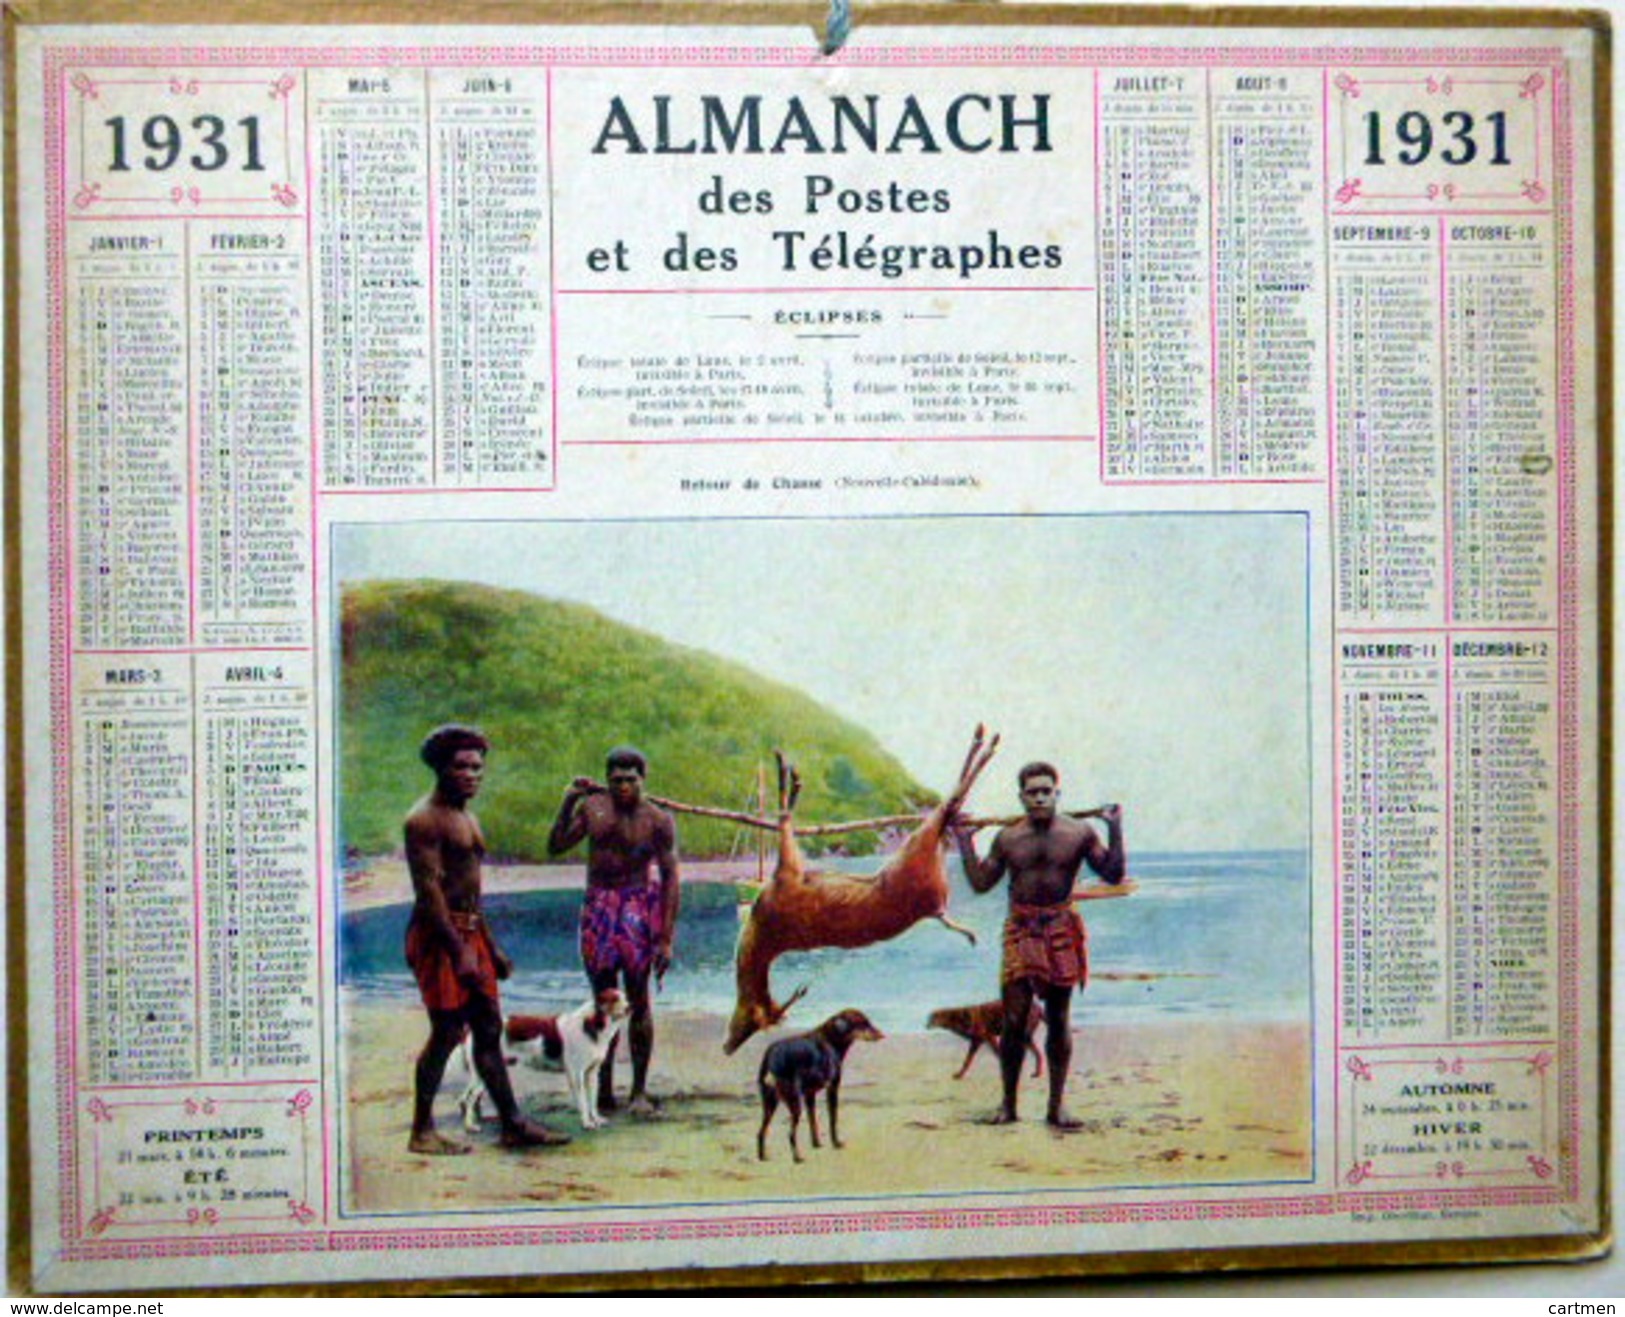 CALENDRIER ALMANACH DES POSTES PTT 1931  CHASSE  DENOUVELLE CALEDONIE DEPARTEMENT DE L'OISE  POSTES ET TELECOMMUNICATION - Tamaño Grande : 1921-40